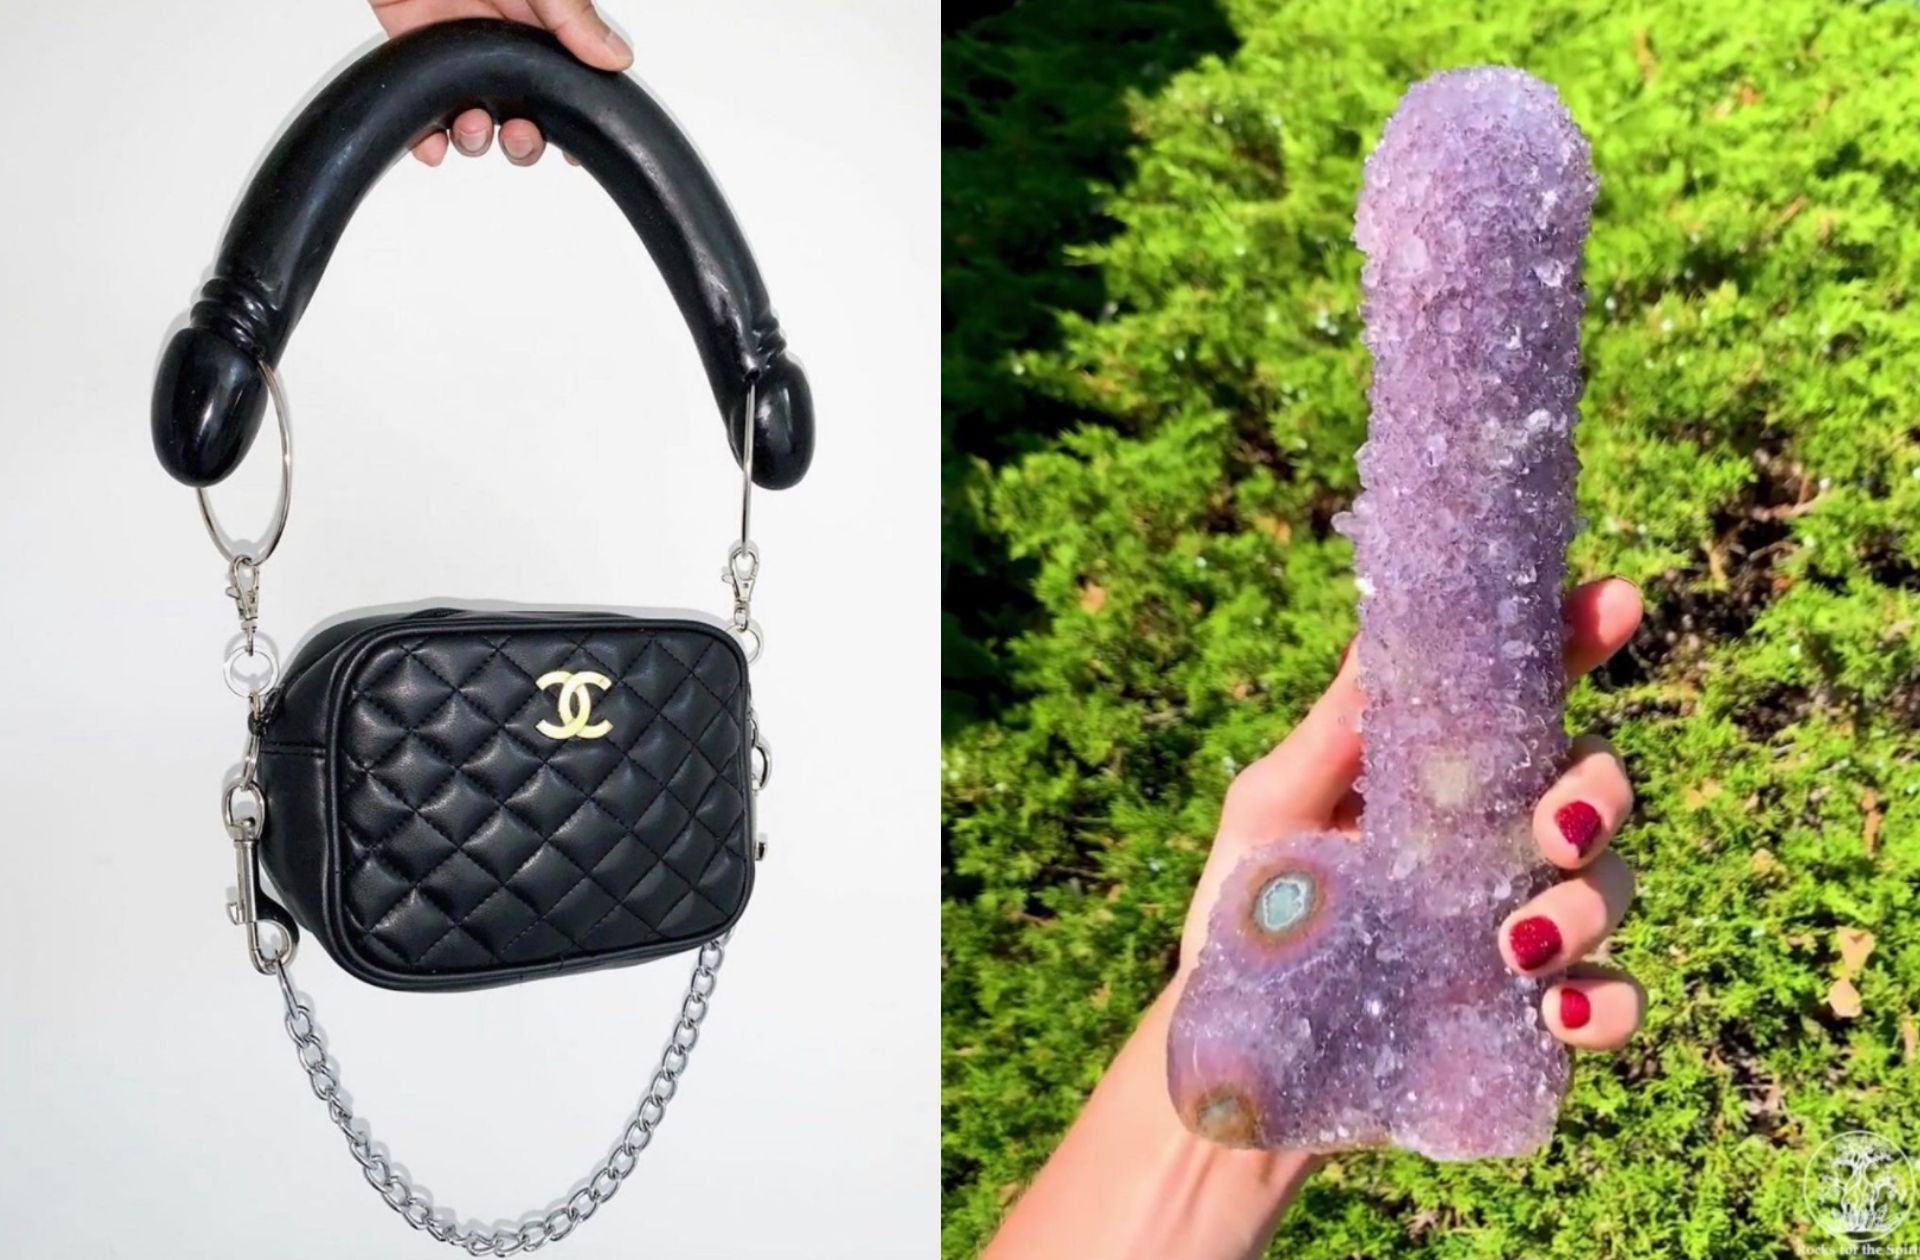 Le 20 août 2019, l'actrice Gillian Anderson a posté sur Instagram une photo d'un sac Chanel avec une anse double-gode, et le 26 septembre 2019 un cristal violet en forme de pénis.